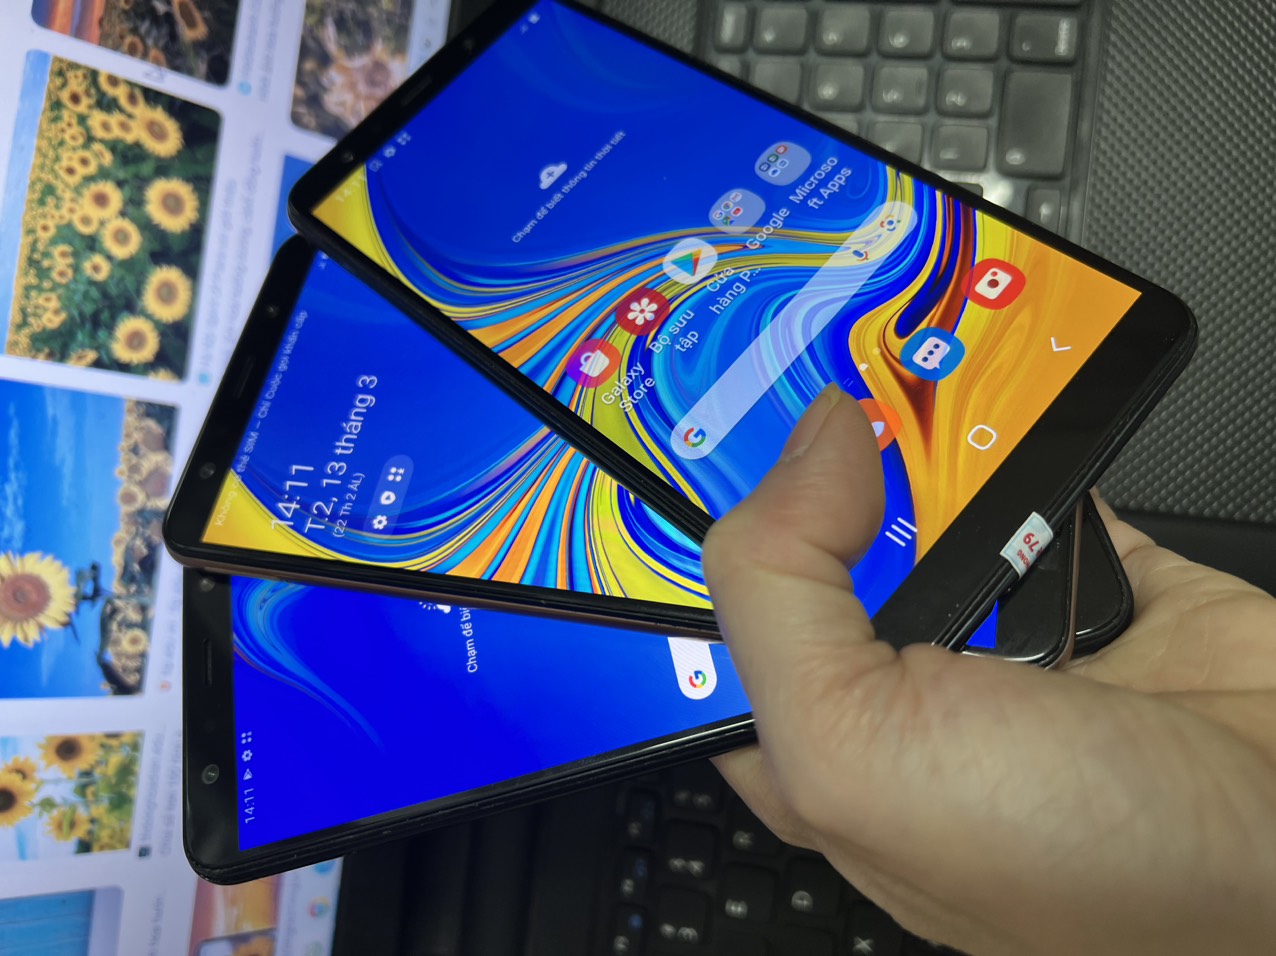 điện thoại Samsung Galaxy A7 2018 - Samsung A750 2sim ram 4G/64G Chính Hãng, cấu hình siêu khủng long, đánh mọi Game PUBG/Liên Quân/Free Fire siêu mượt